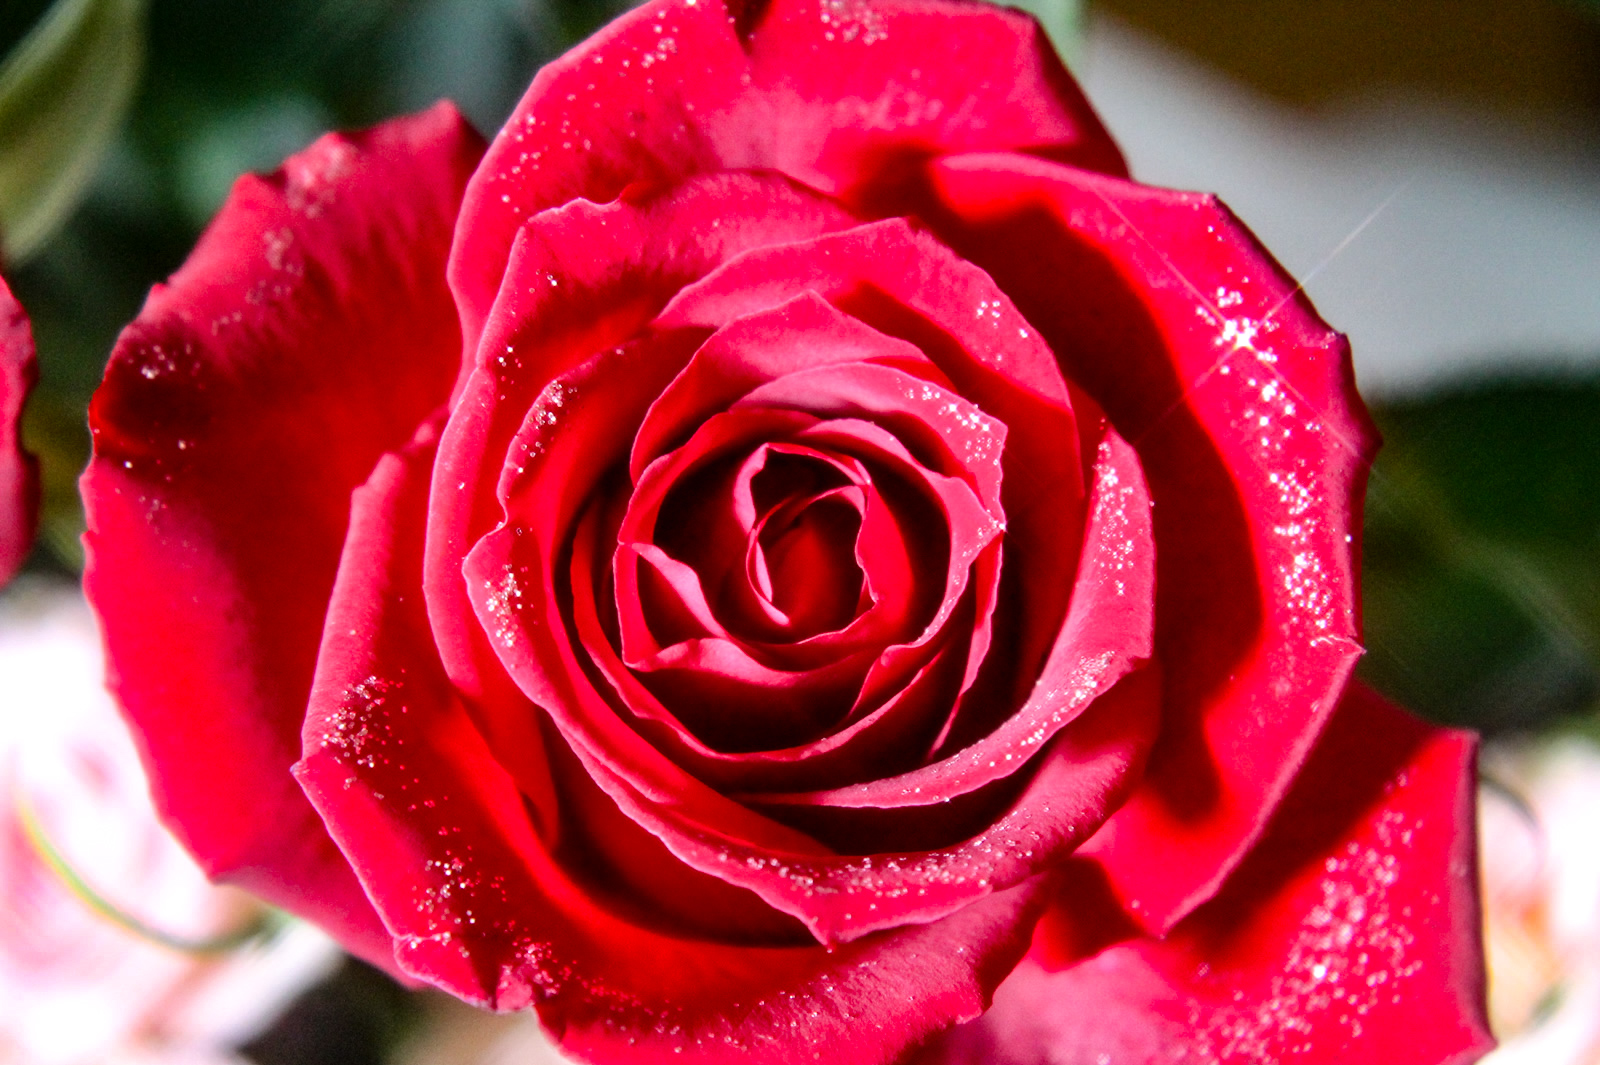 キラキラ光る一輪の薔薇 無料画像 フリー写真素材 Activephotostyle